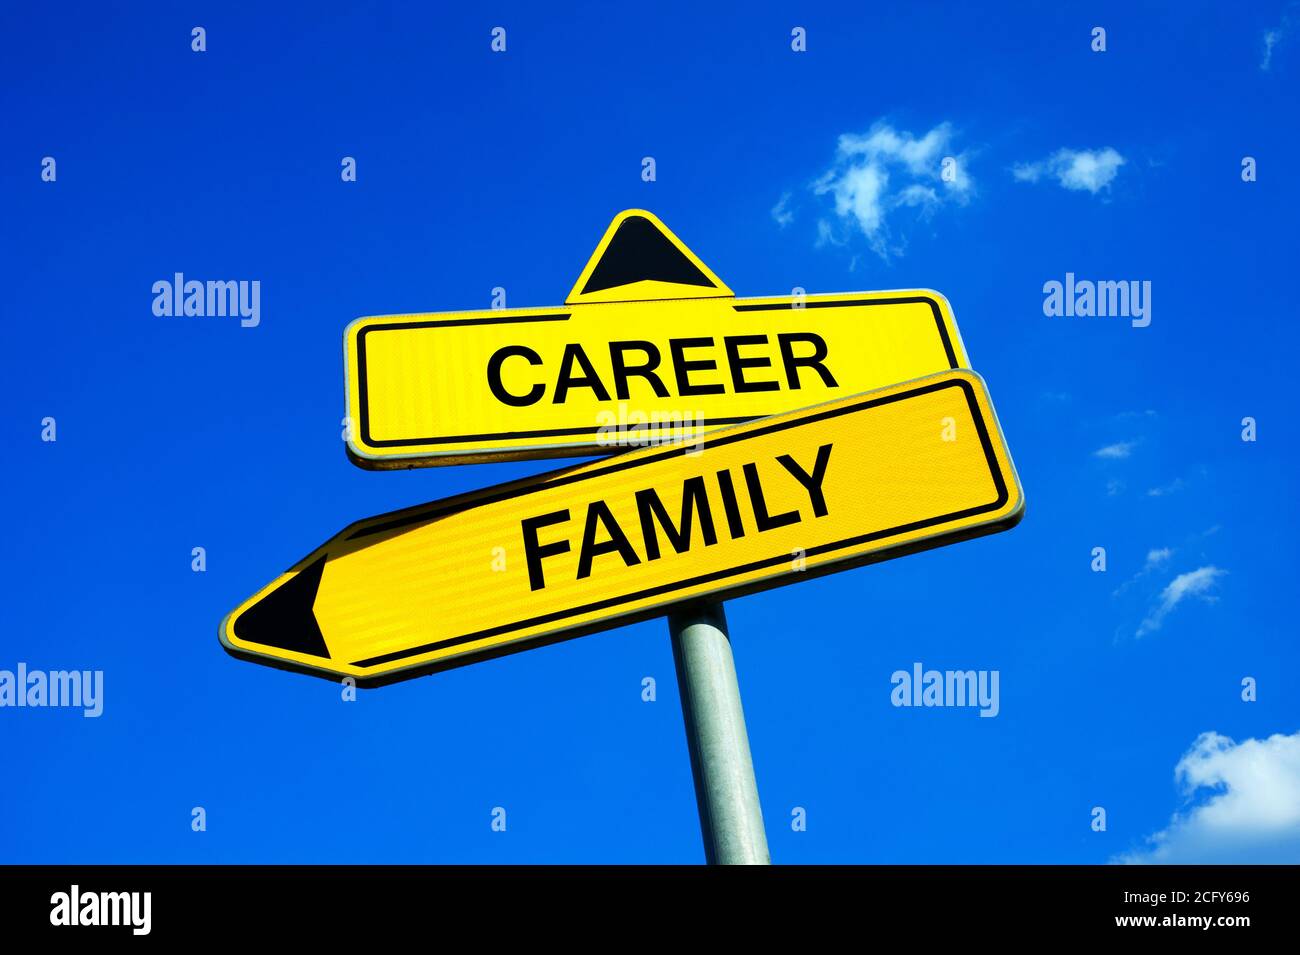 Karriere oder Familie - Verkehrszeichen mit zwei Optionen - Entscheidung, Familie zu etablieren und tun Haushaltung und Elternschaft oder Karriere und Beruf aufbauen Stockfoto